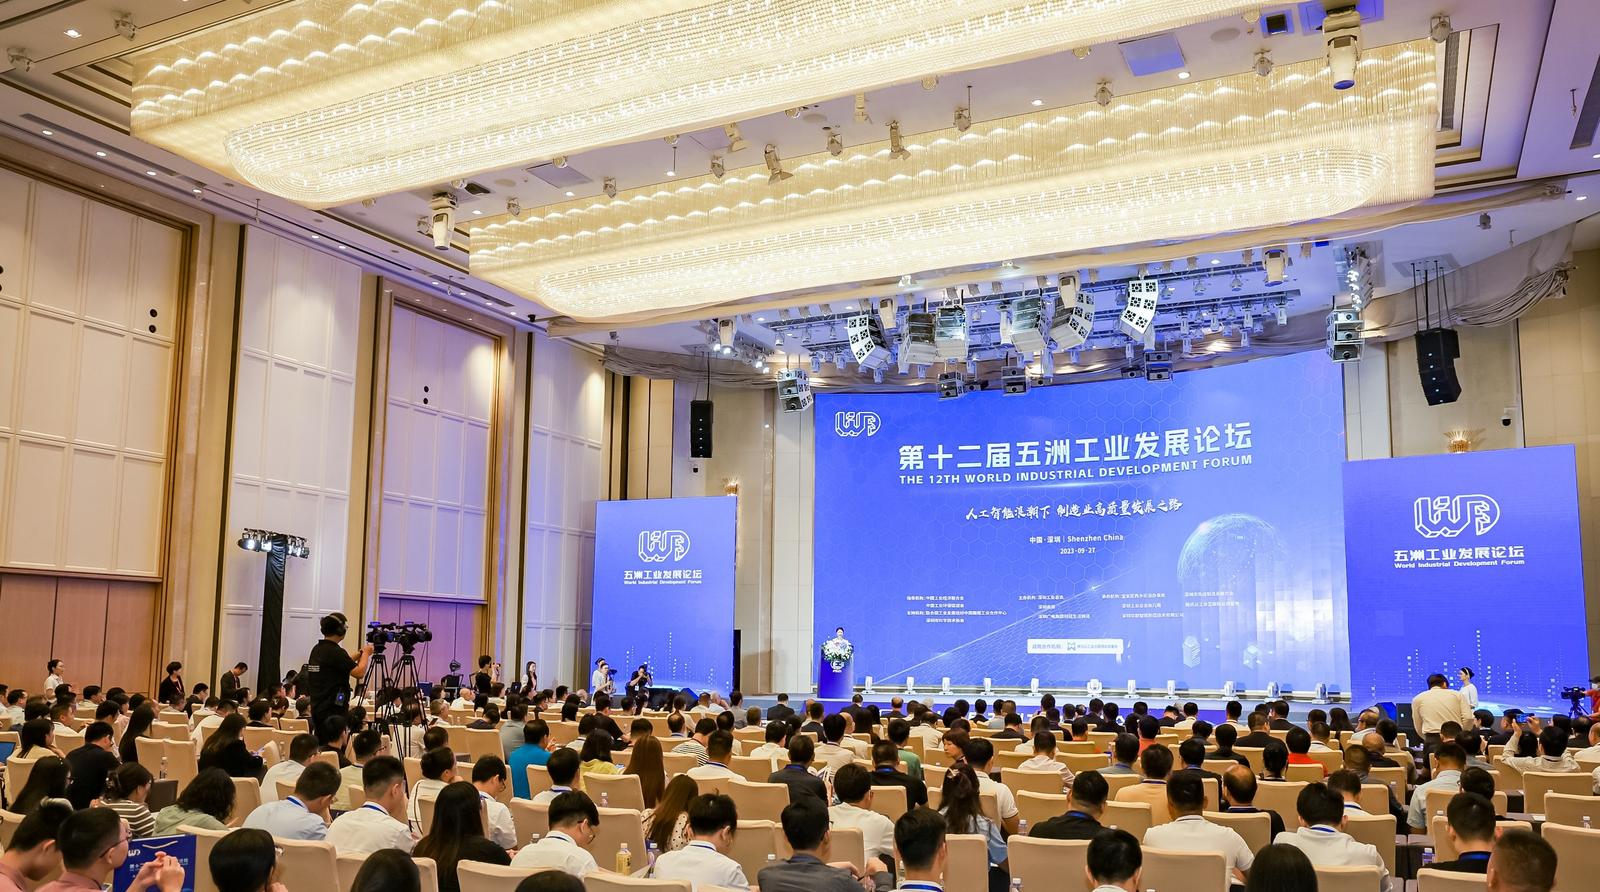 “五洲工业发展论坛”让世界看见中国“智”造的力量